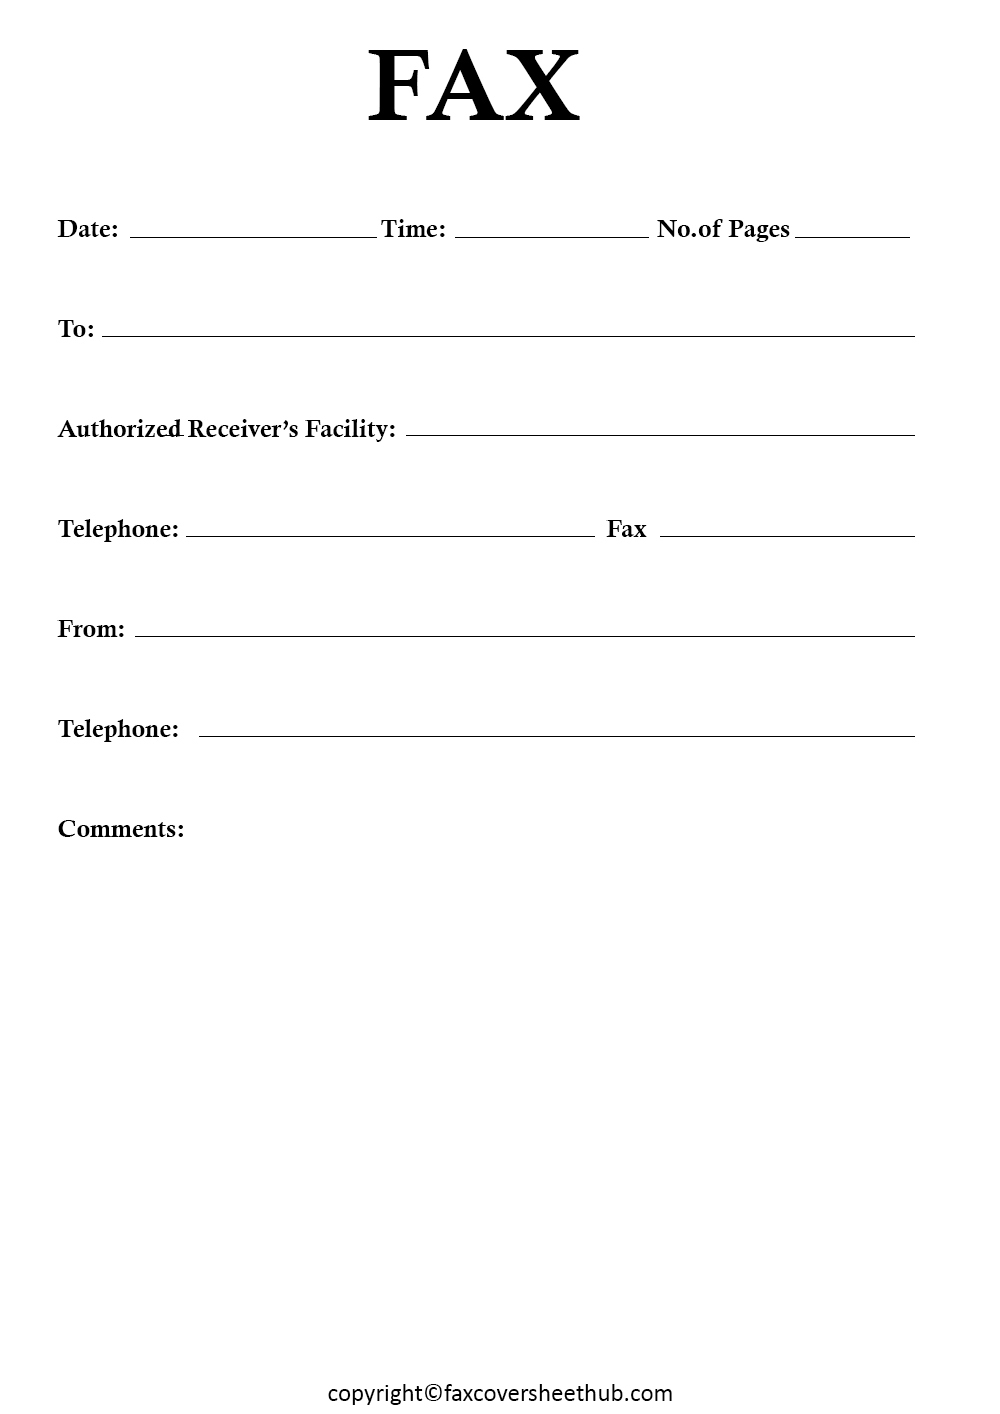 HIPPA Complaint Fax Cover Sheet